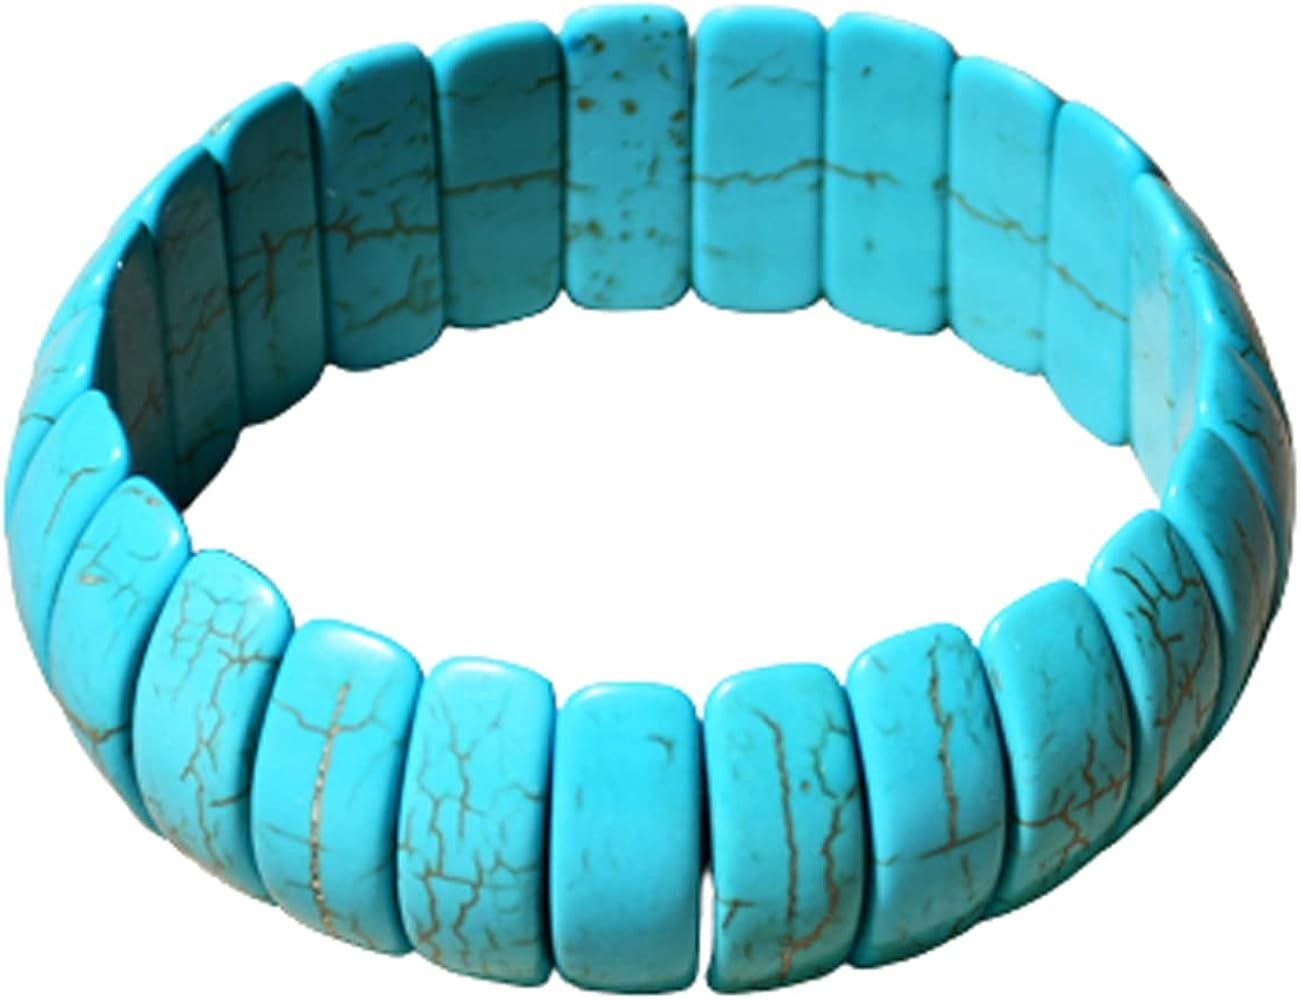 Caiyao Bohemian Vintage Simulated Turquoise Stretch Bracelet Handmade Ethnic Tribal Adjustable Tu... | Amazon (US)